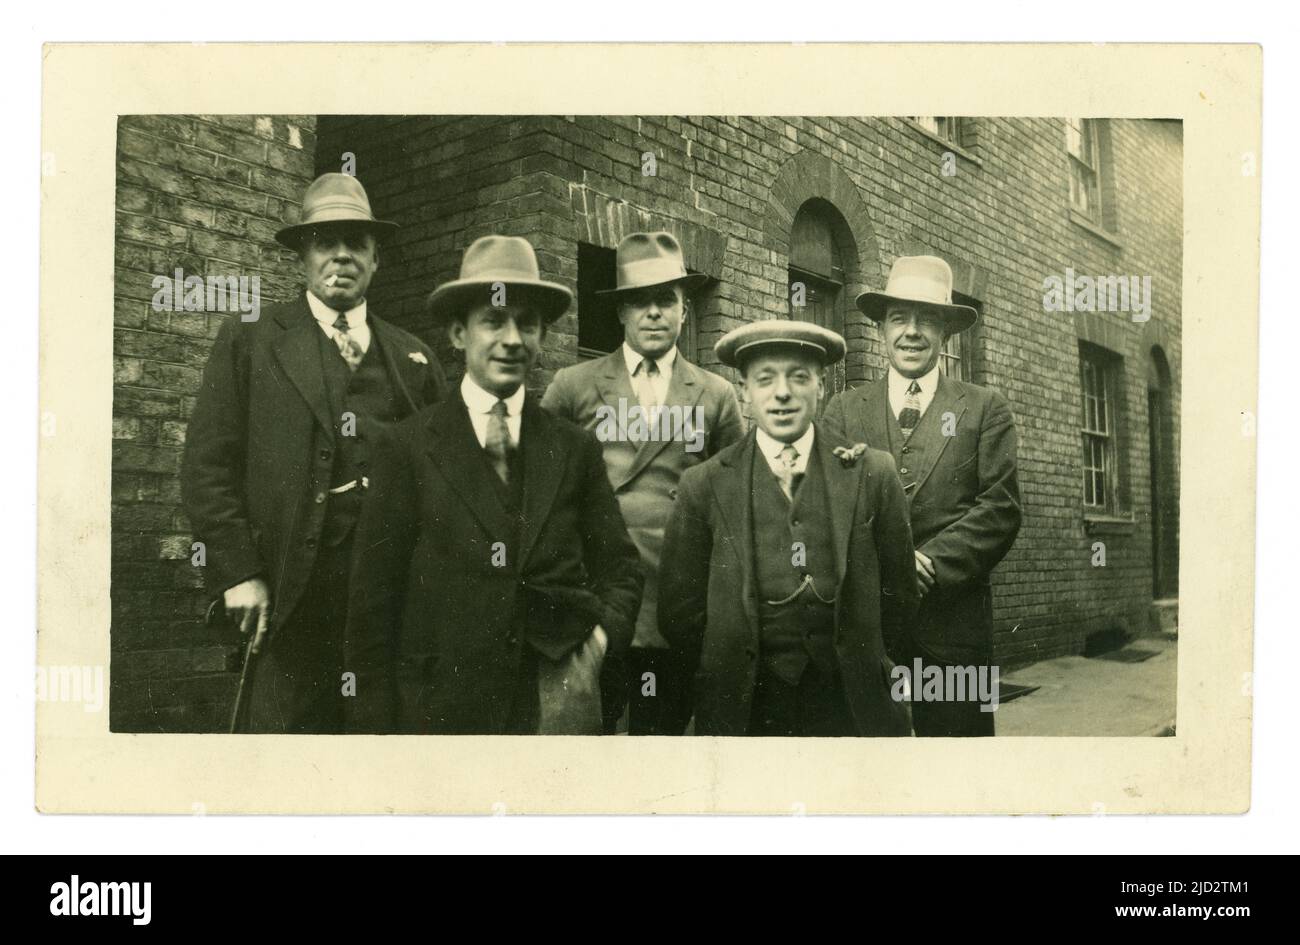 Ursprüngliche Postkarte aus den frühen 1920er Jahren einer Gruppe von Männern der Arbeiterklasse, die für ein Foto in einer städtischen Straße, in einer armen Nachbarschaft posieren, Fedora- oder Trilby-Hüte tragen und ein Mann eine flache Mütze, Peaky-Blinders/Gangster-Lookalikes, möglicherweise eine Hochzeitsfeier trägt, Bleibt zurück, während der Mann vorne eine Knopflochblume auf dem Revers trägt. Ca. 1925. GROSSBRITANNIEN Stockfoto